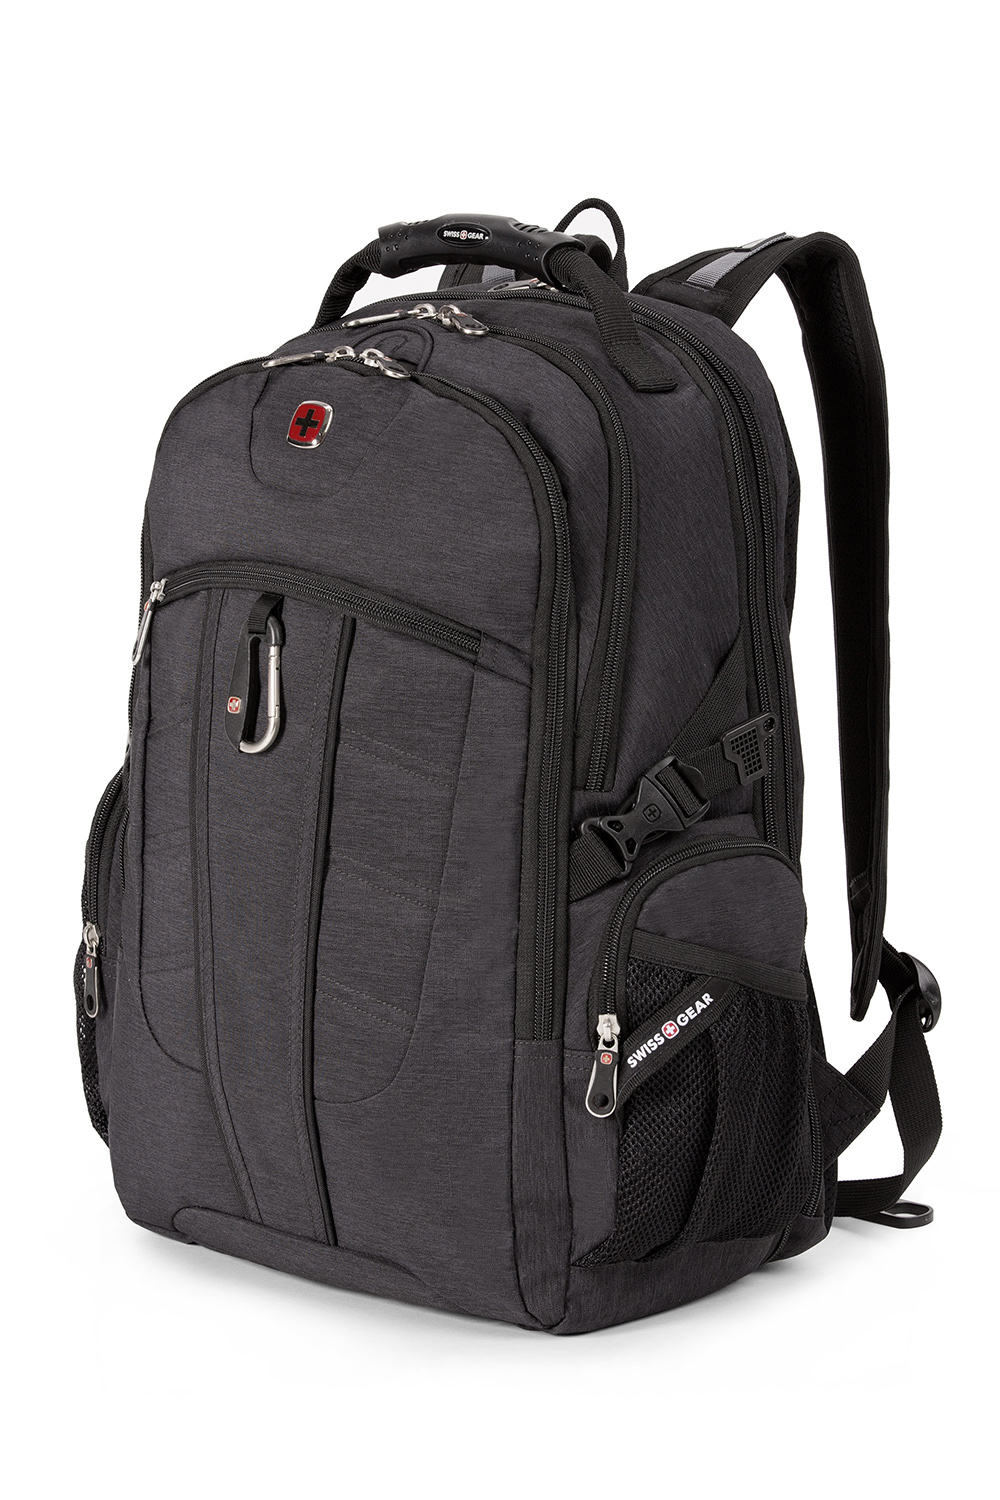 SWISSGEAR 1753 ScanSmart Laptop Backpack - Ripstop Grey Heather